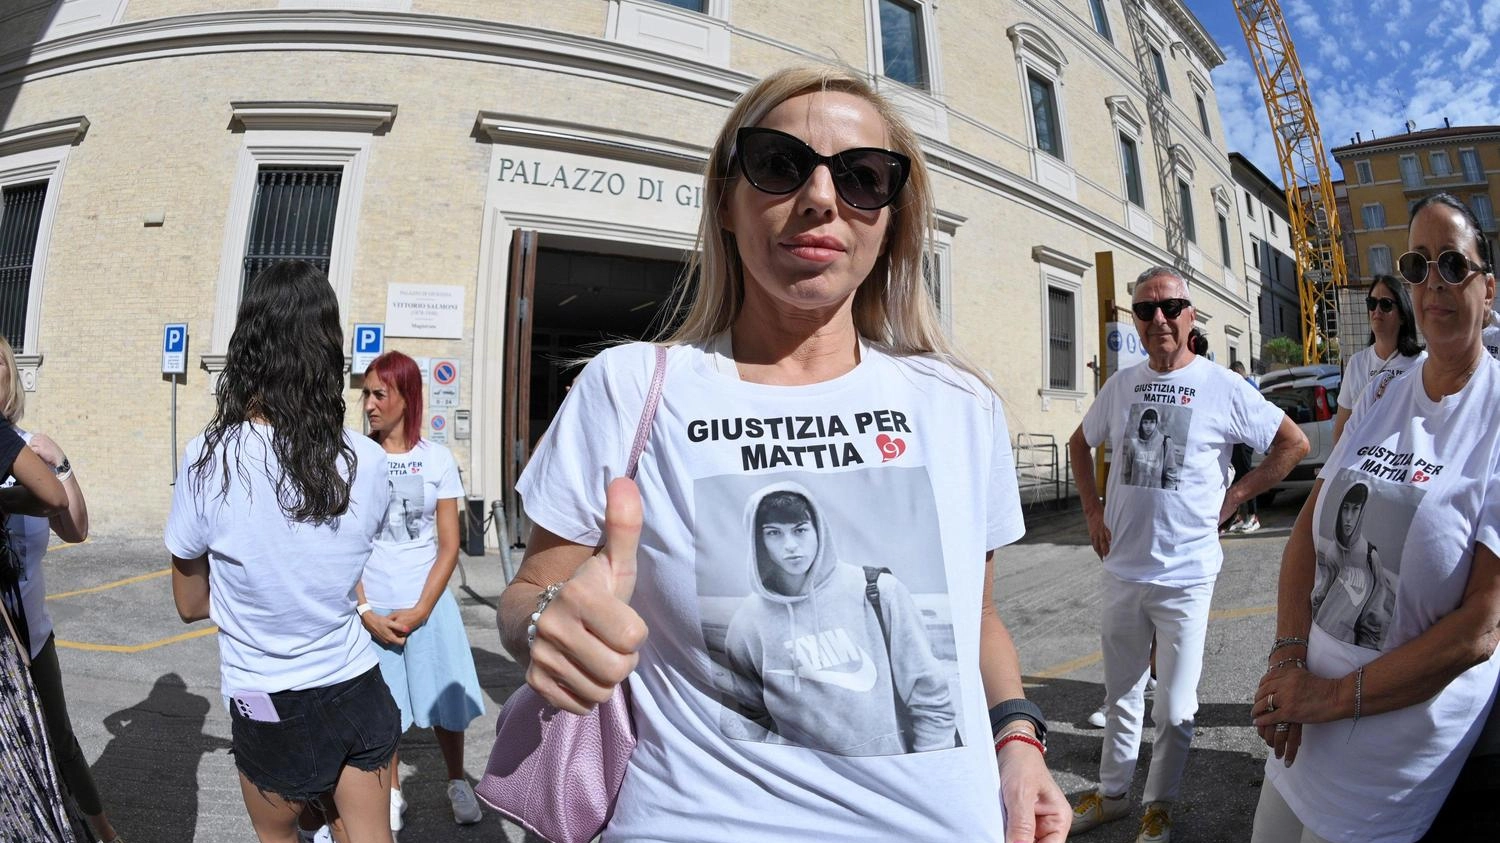 Giovane morto in stazione: "Giustizia per Mattia"